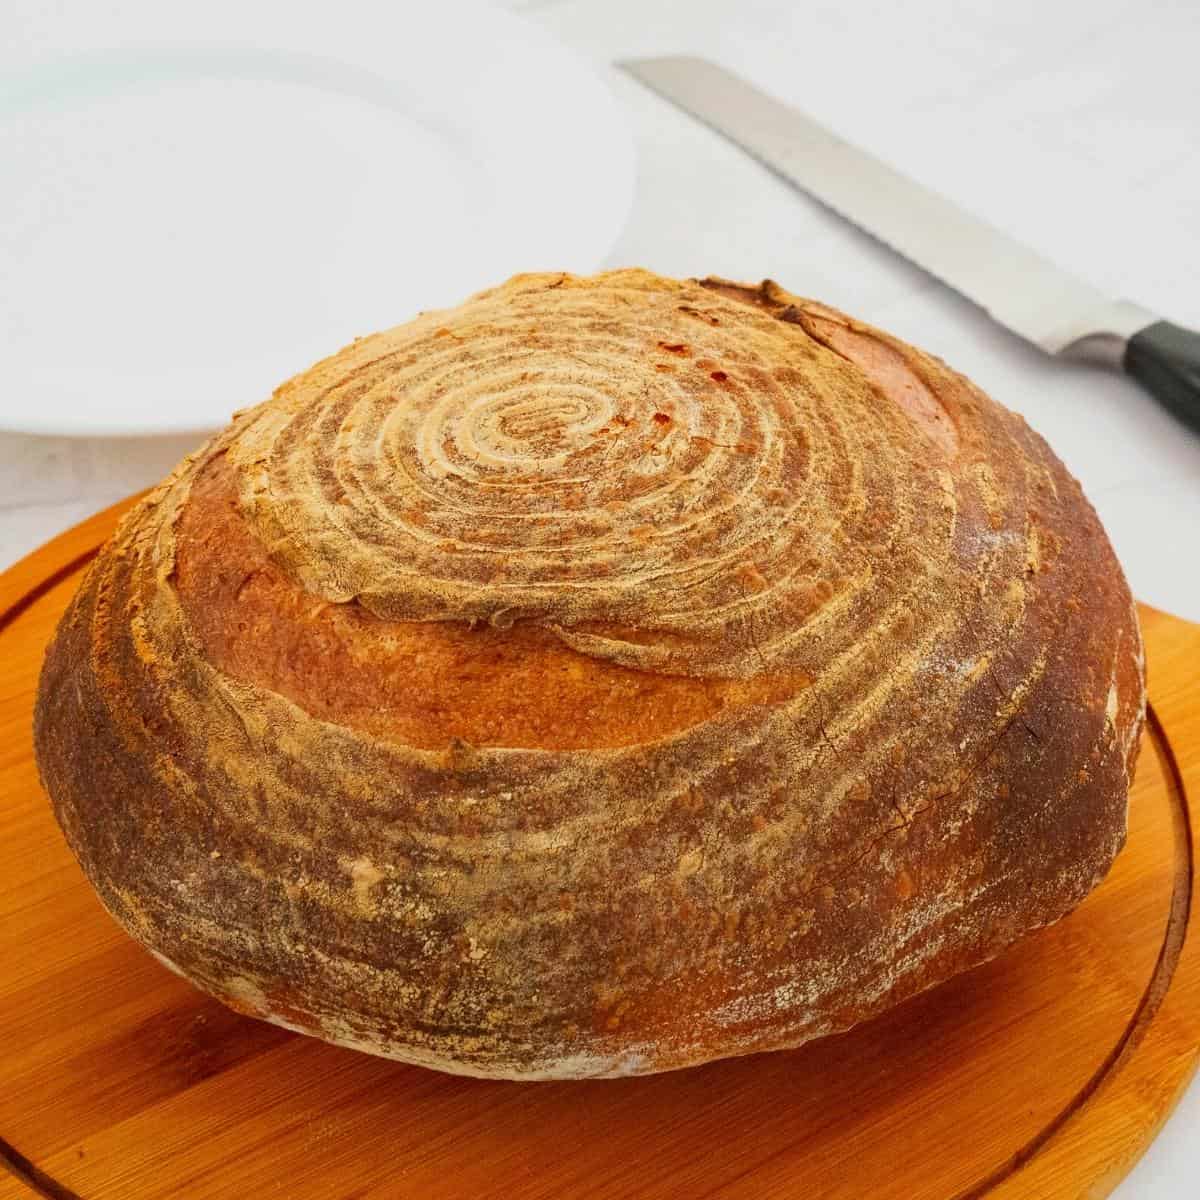 Sourdough bread on the wooden board.